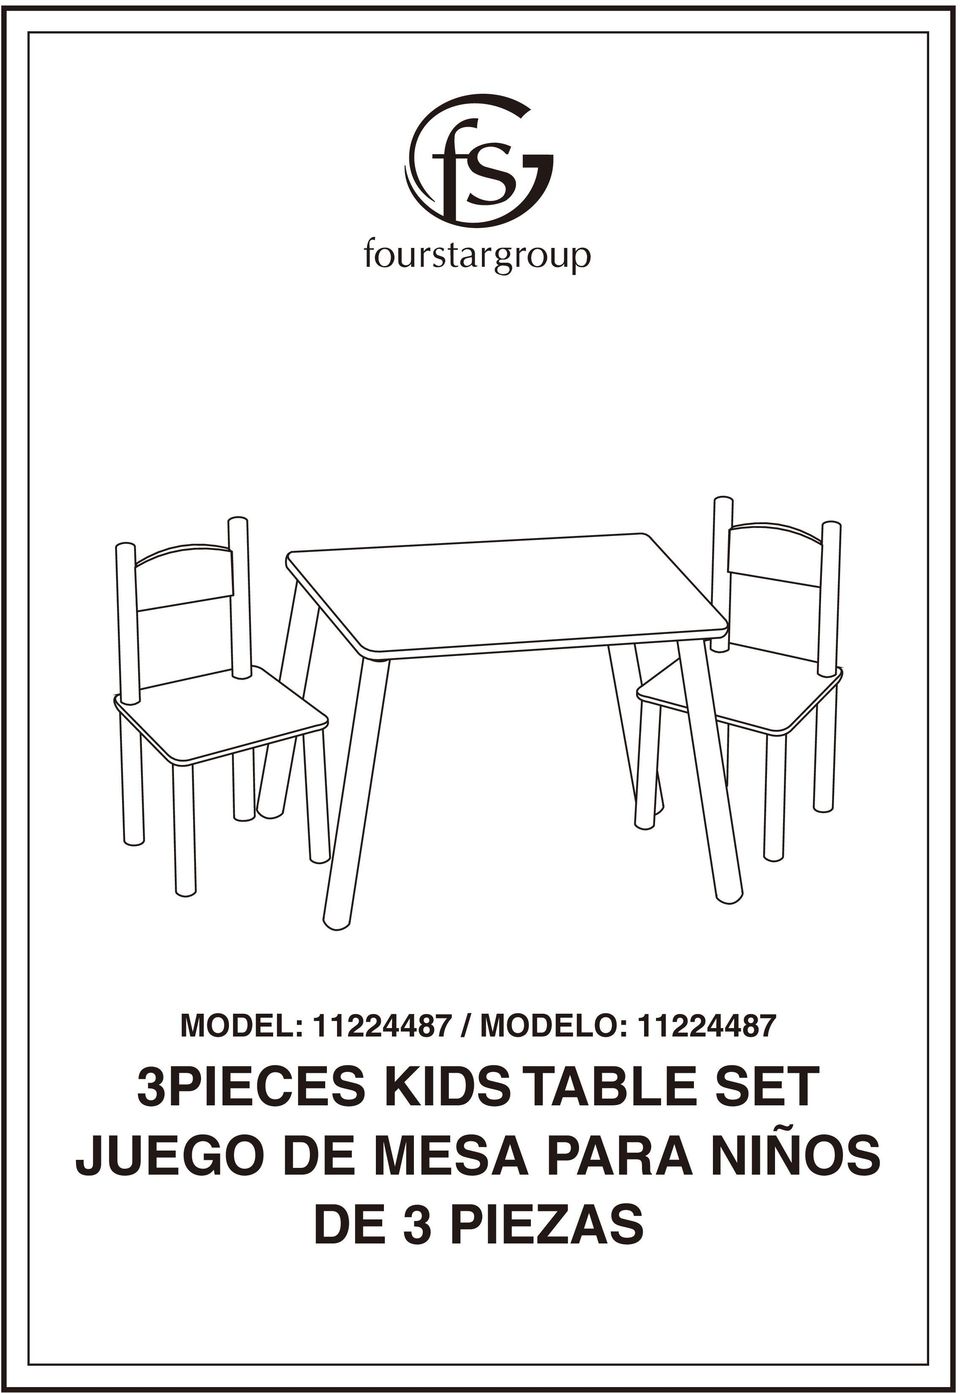 3PIECES KIDS TABLE SET